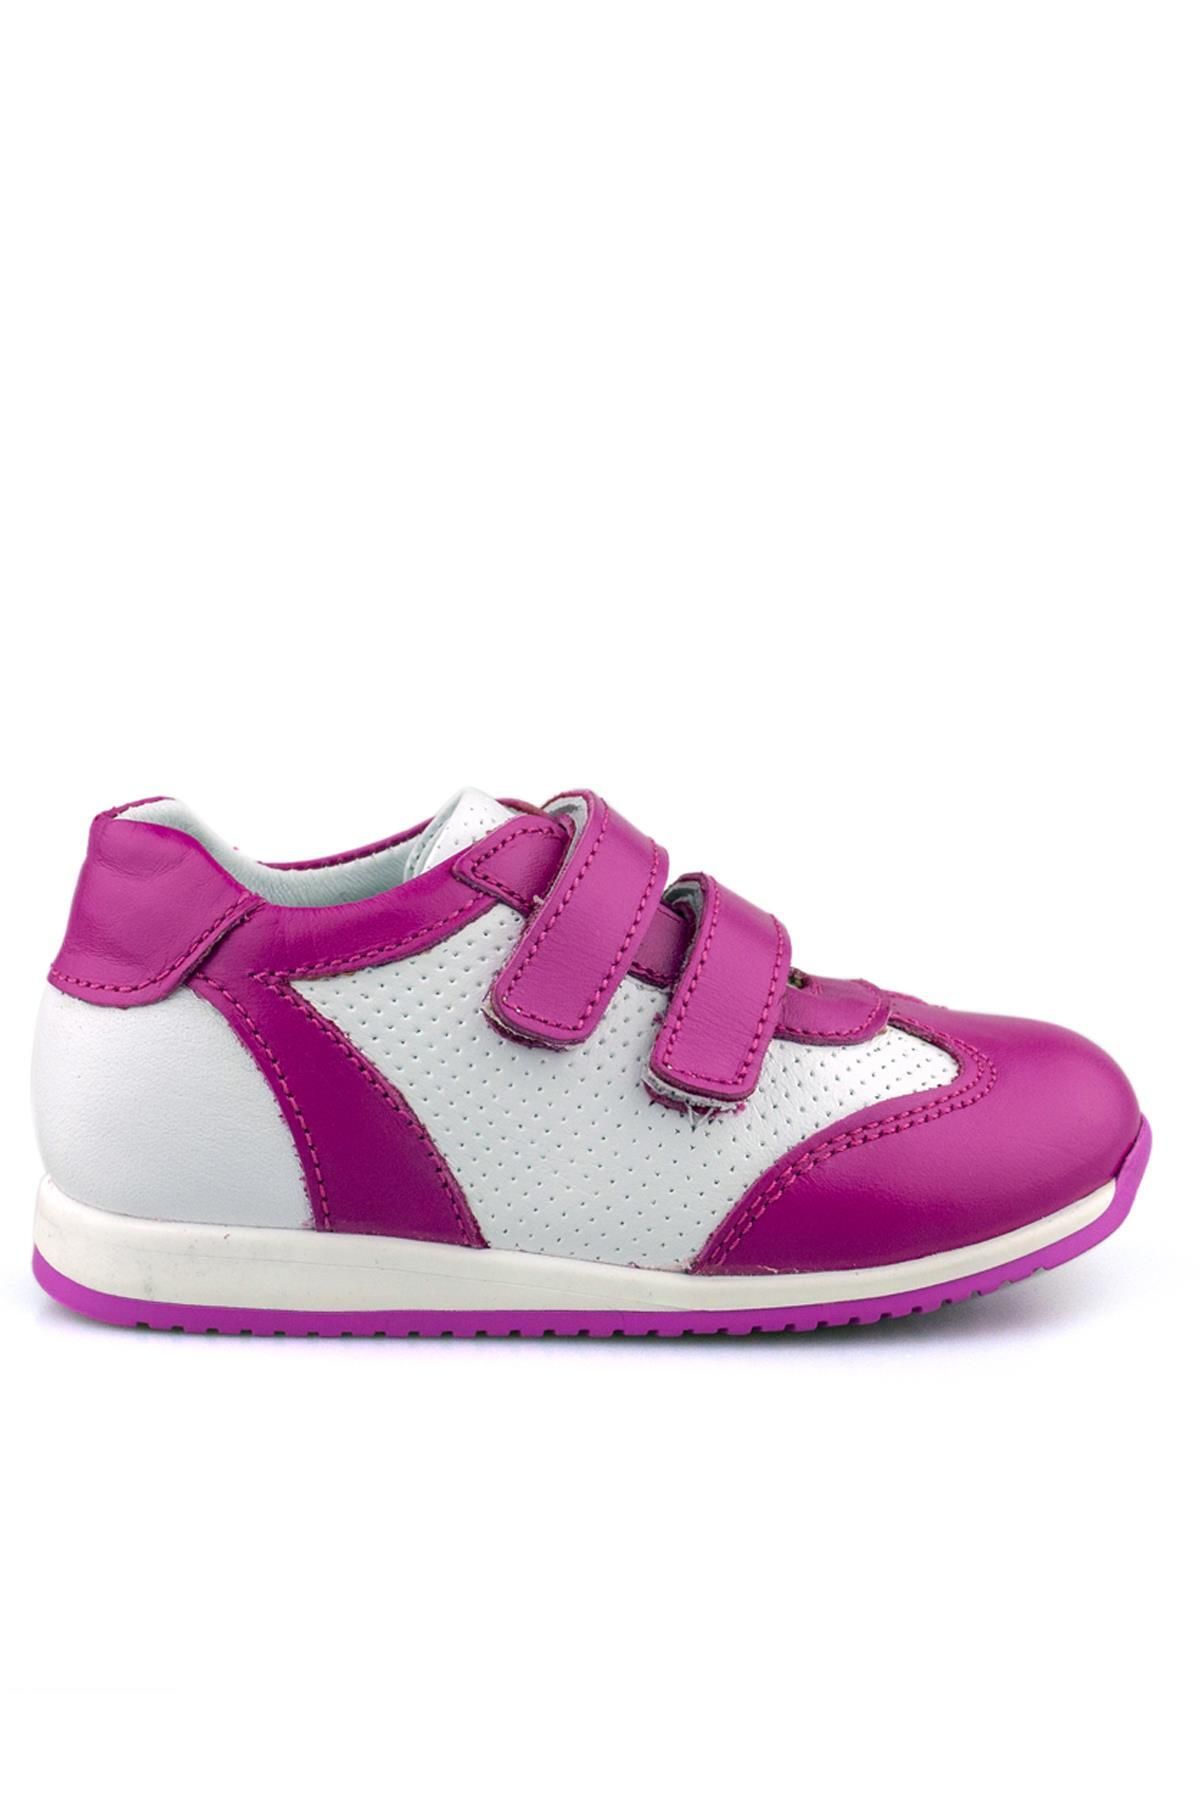 Cici Bebe Ayakkabı Hakiki Deri Fuşya Beyaz Kız Çocuk Günlük Spor Ayakkabı